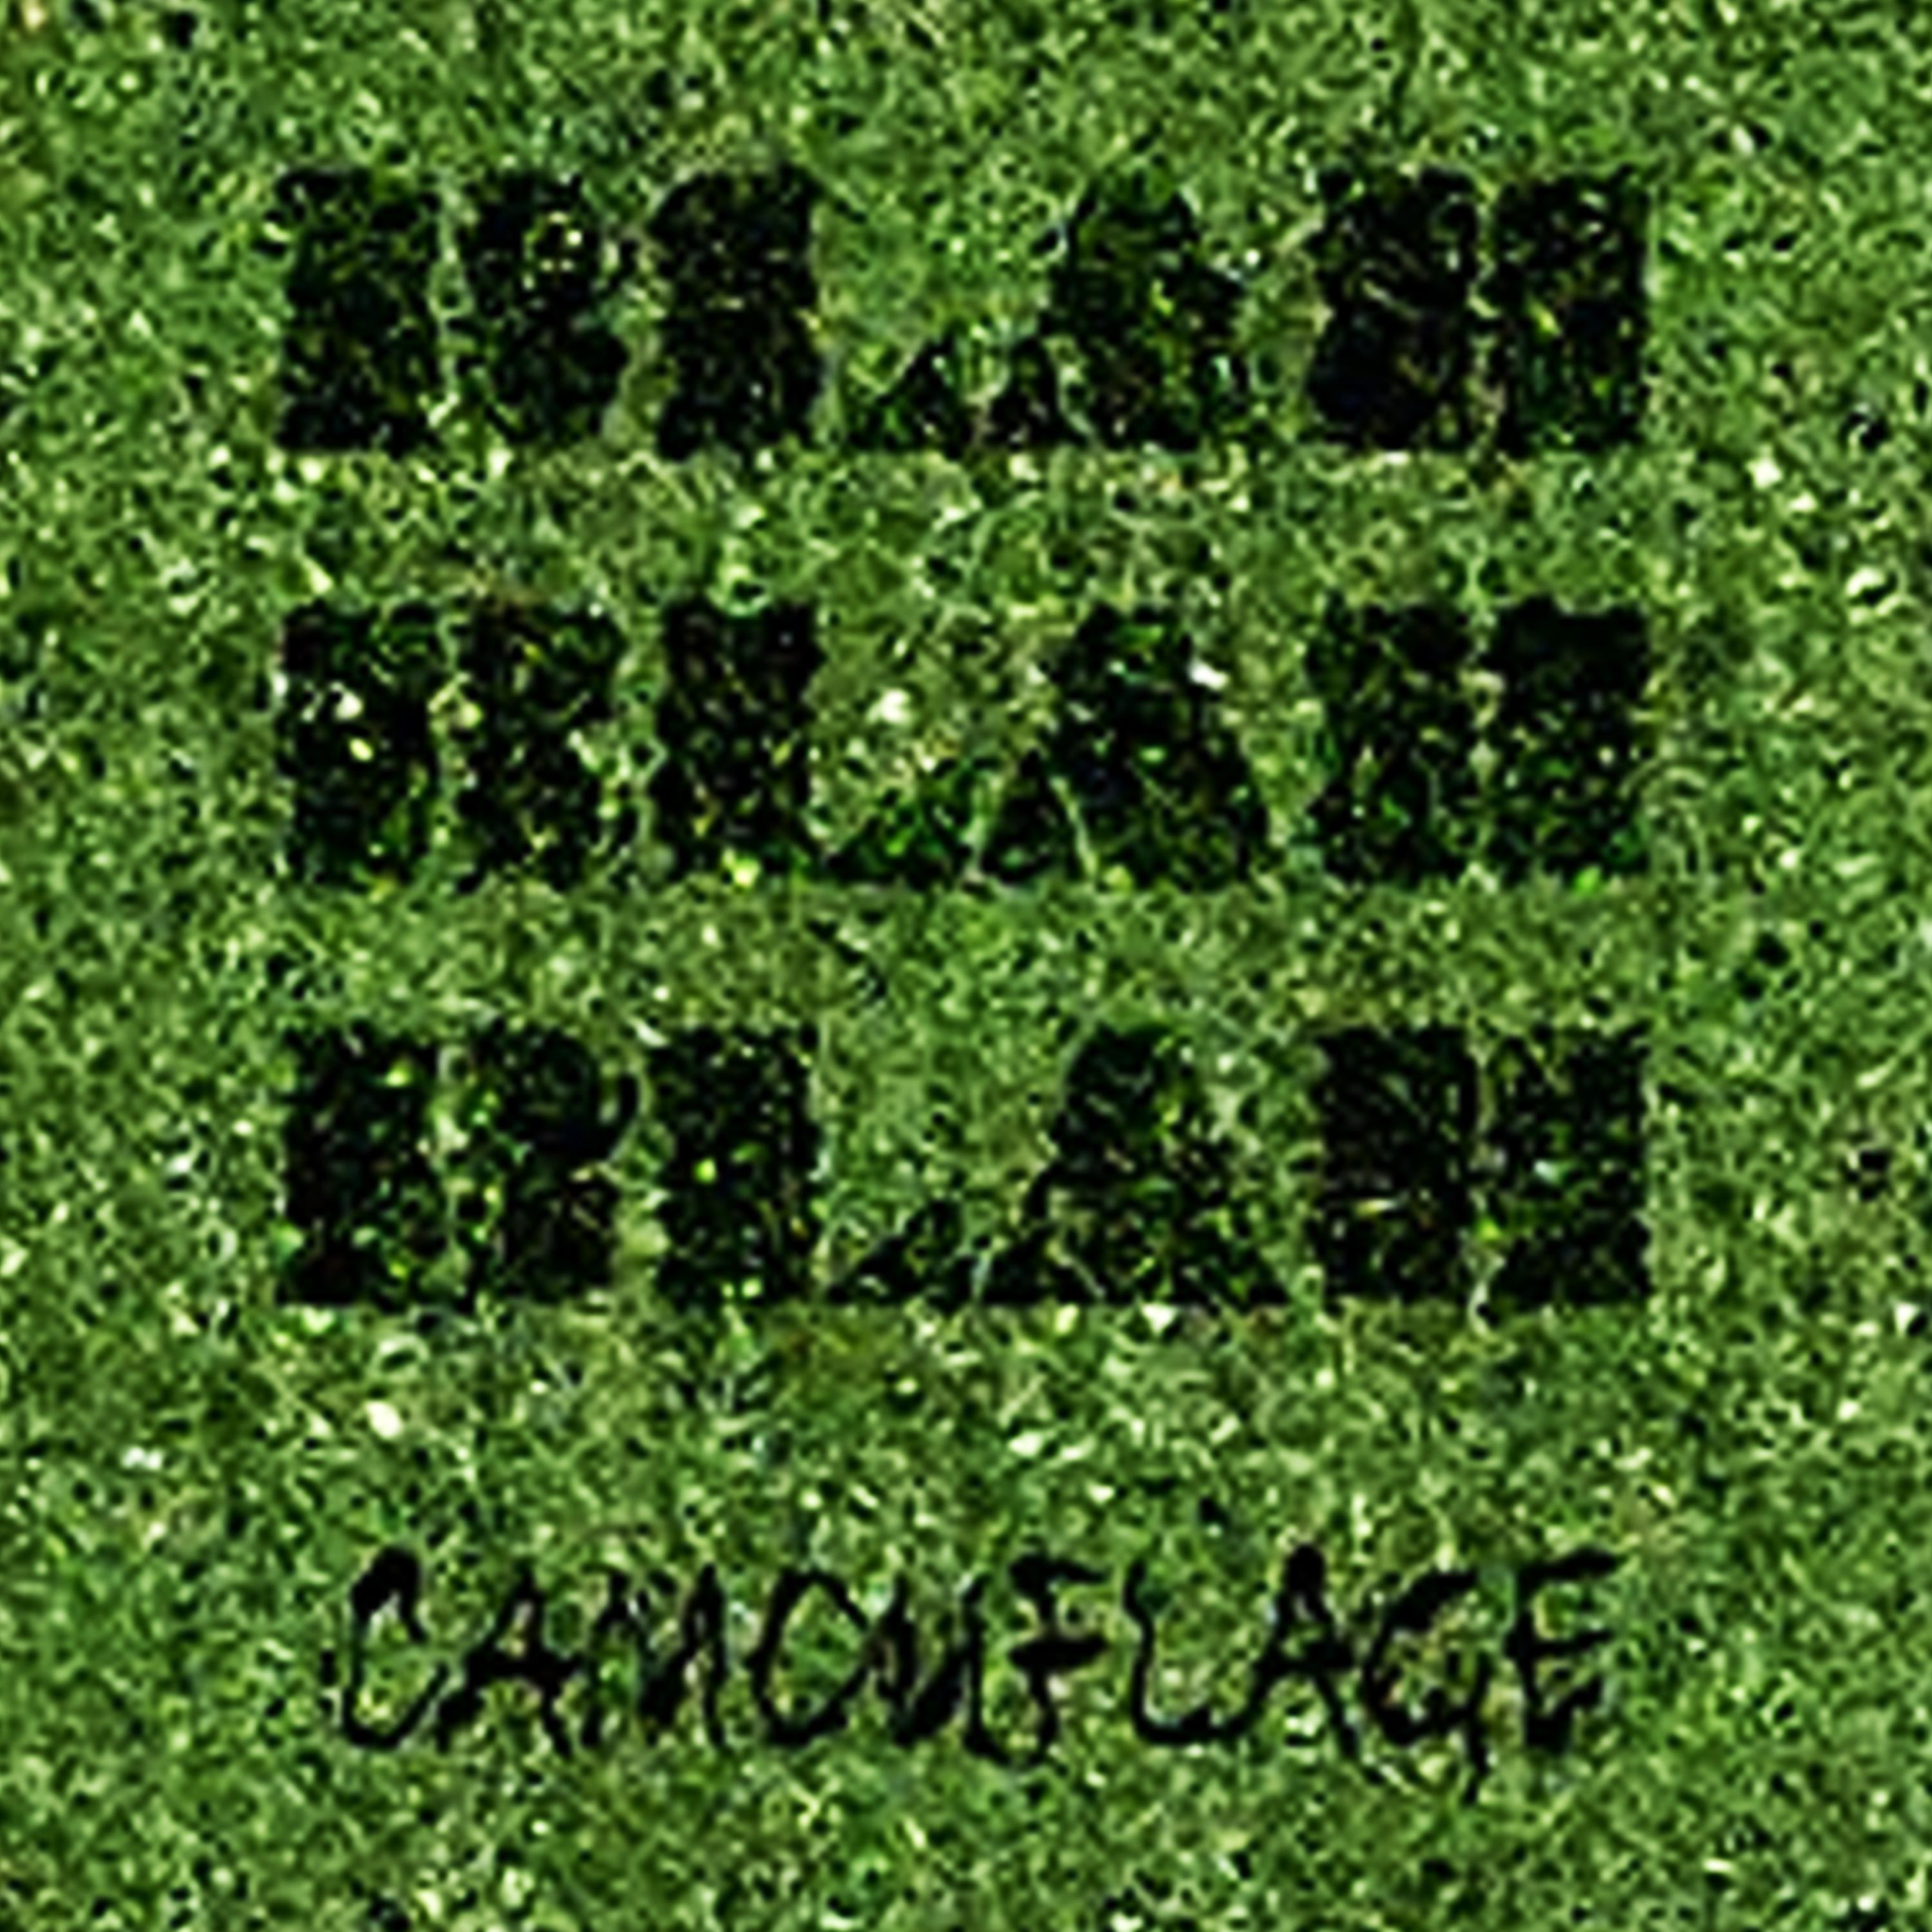 Постер альбома Camouflage